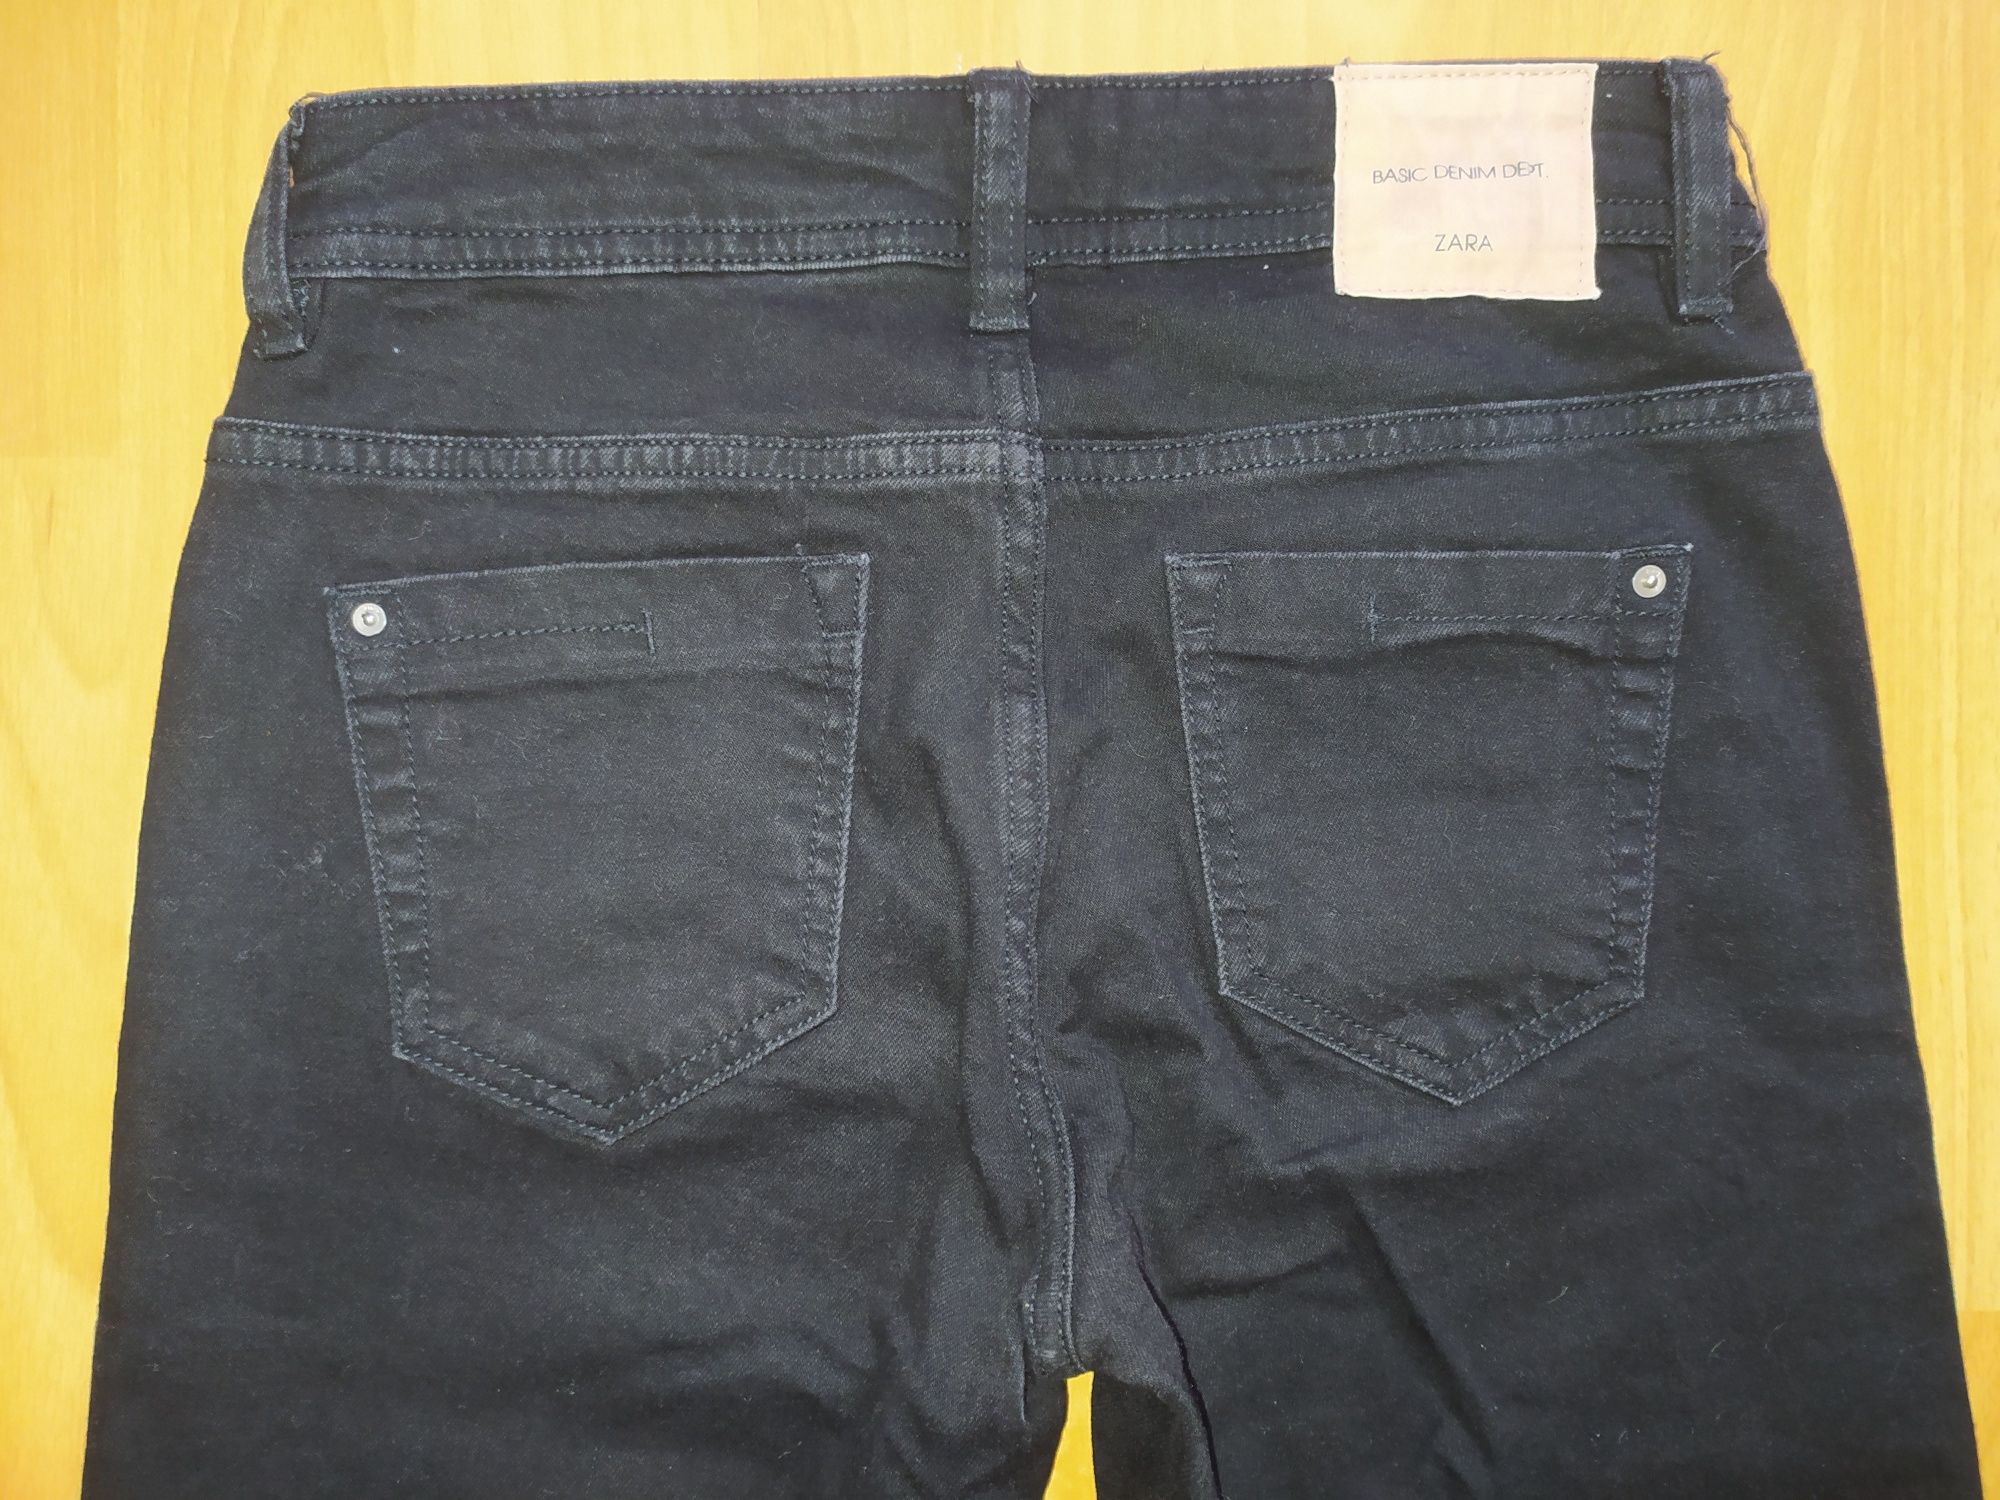 Продам чёрные джинсы для девочки фирмы ZARA размер 34.